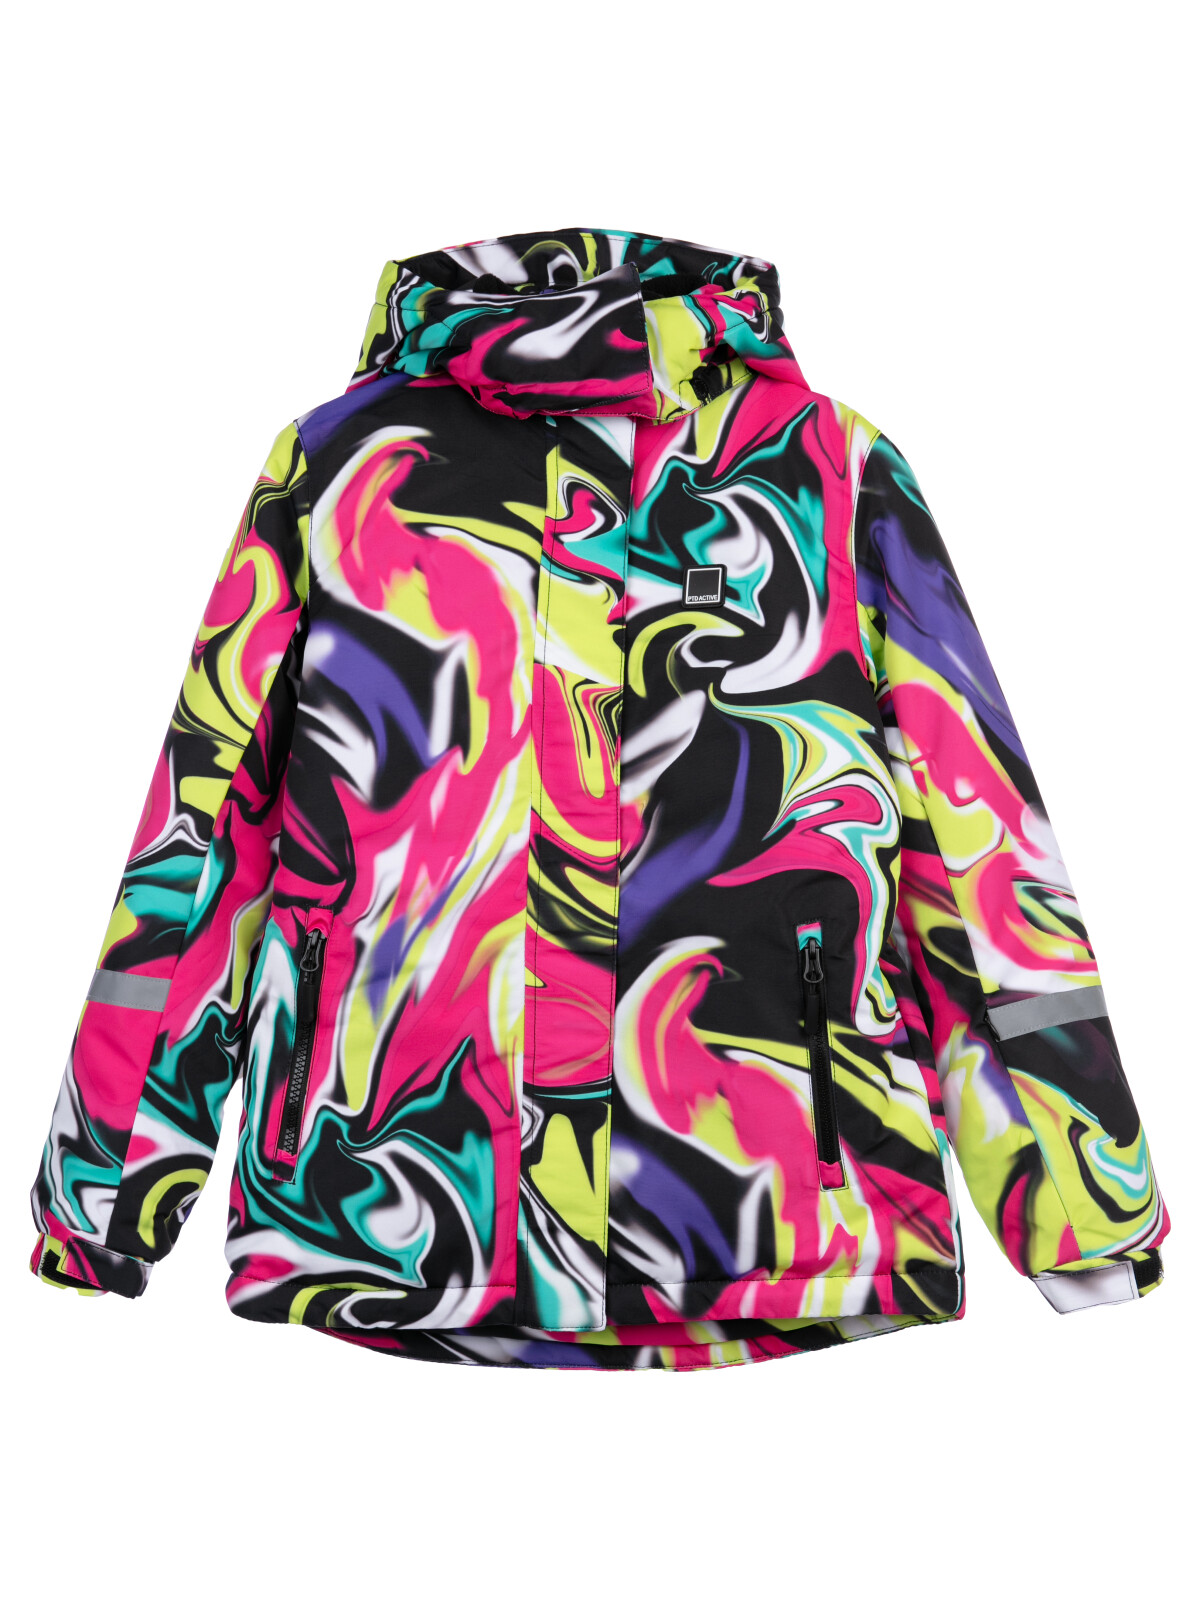 Куртка текстильная с полиуретановым покрытием для девочек PlayToday, цветной, 134